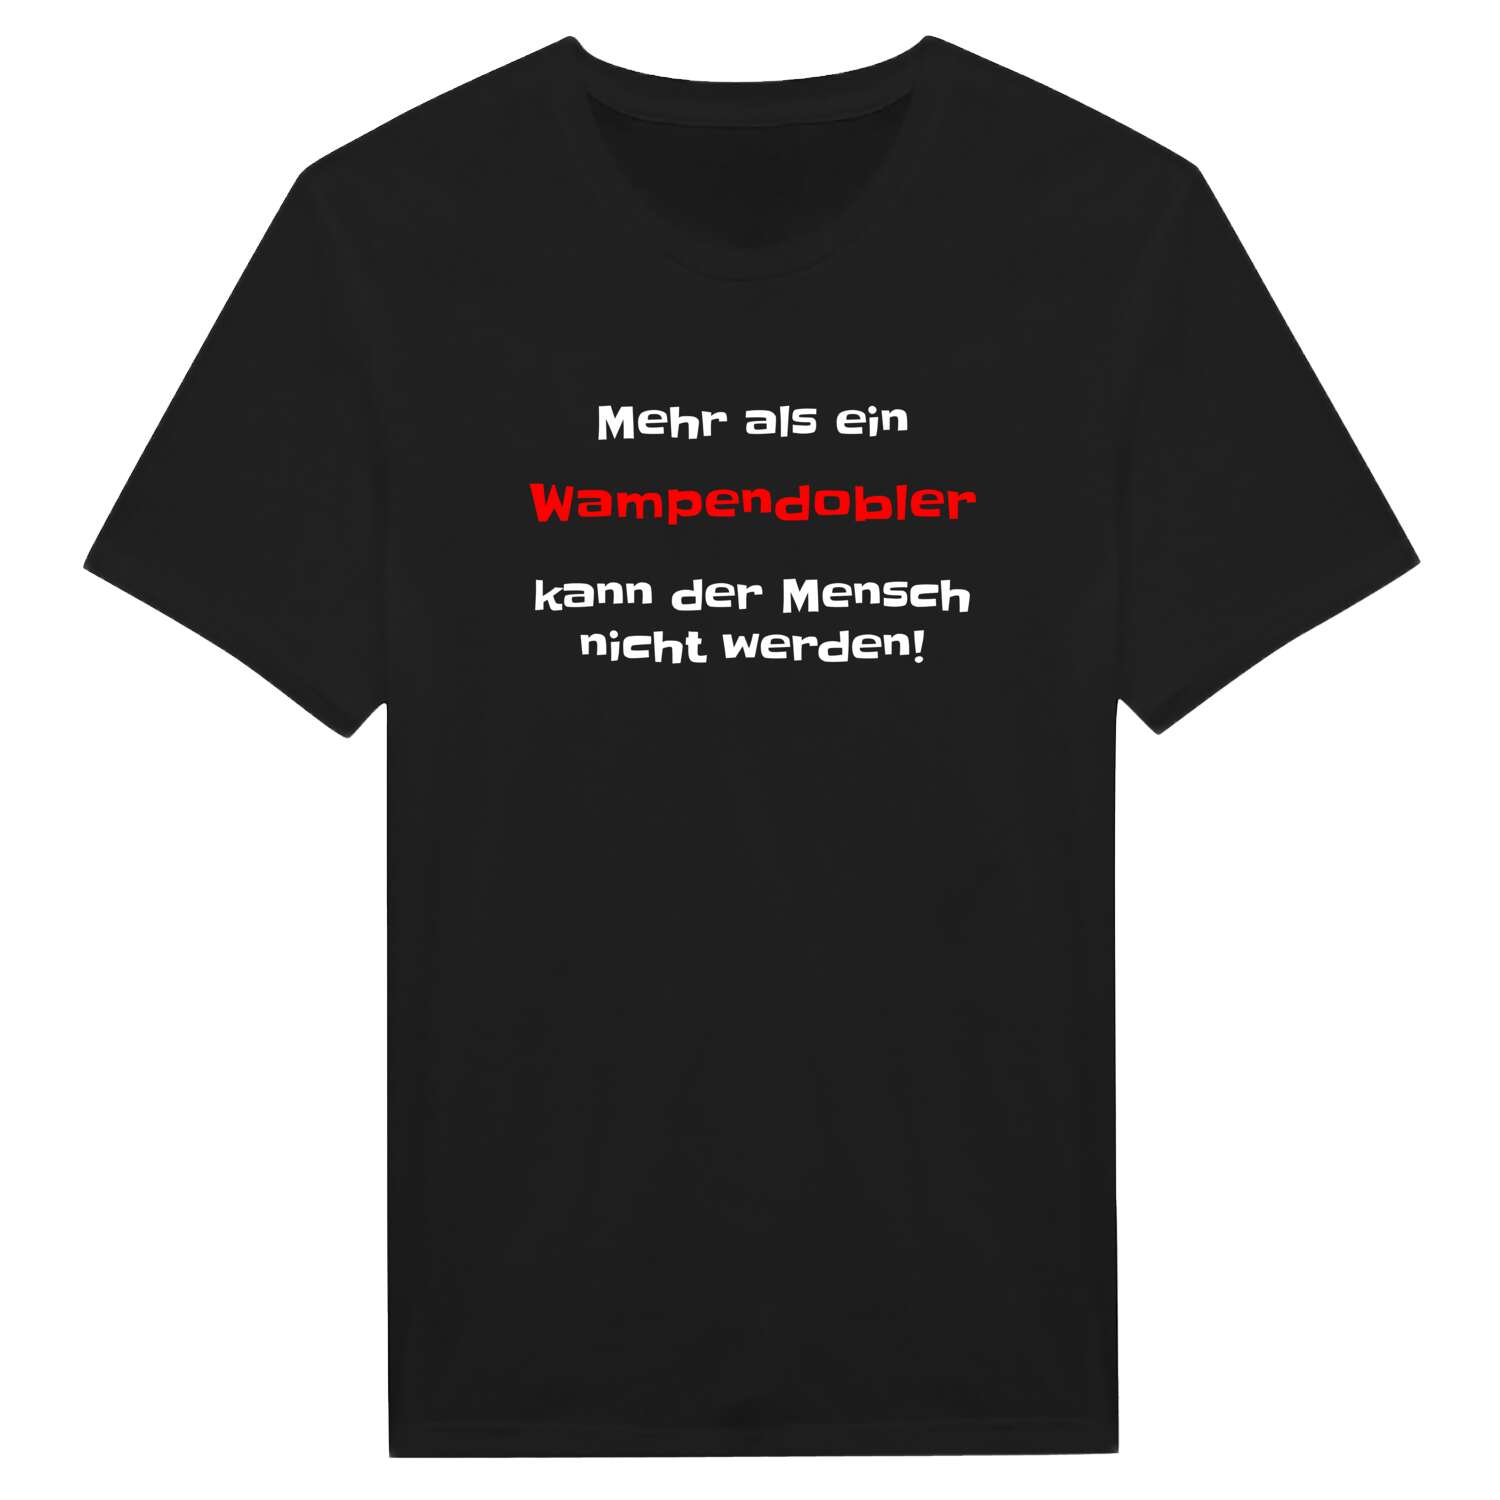 Wampendobl T-Shirt »Mehr als ein«